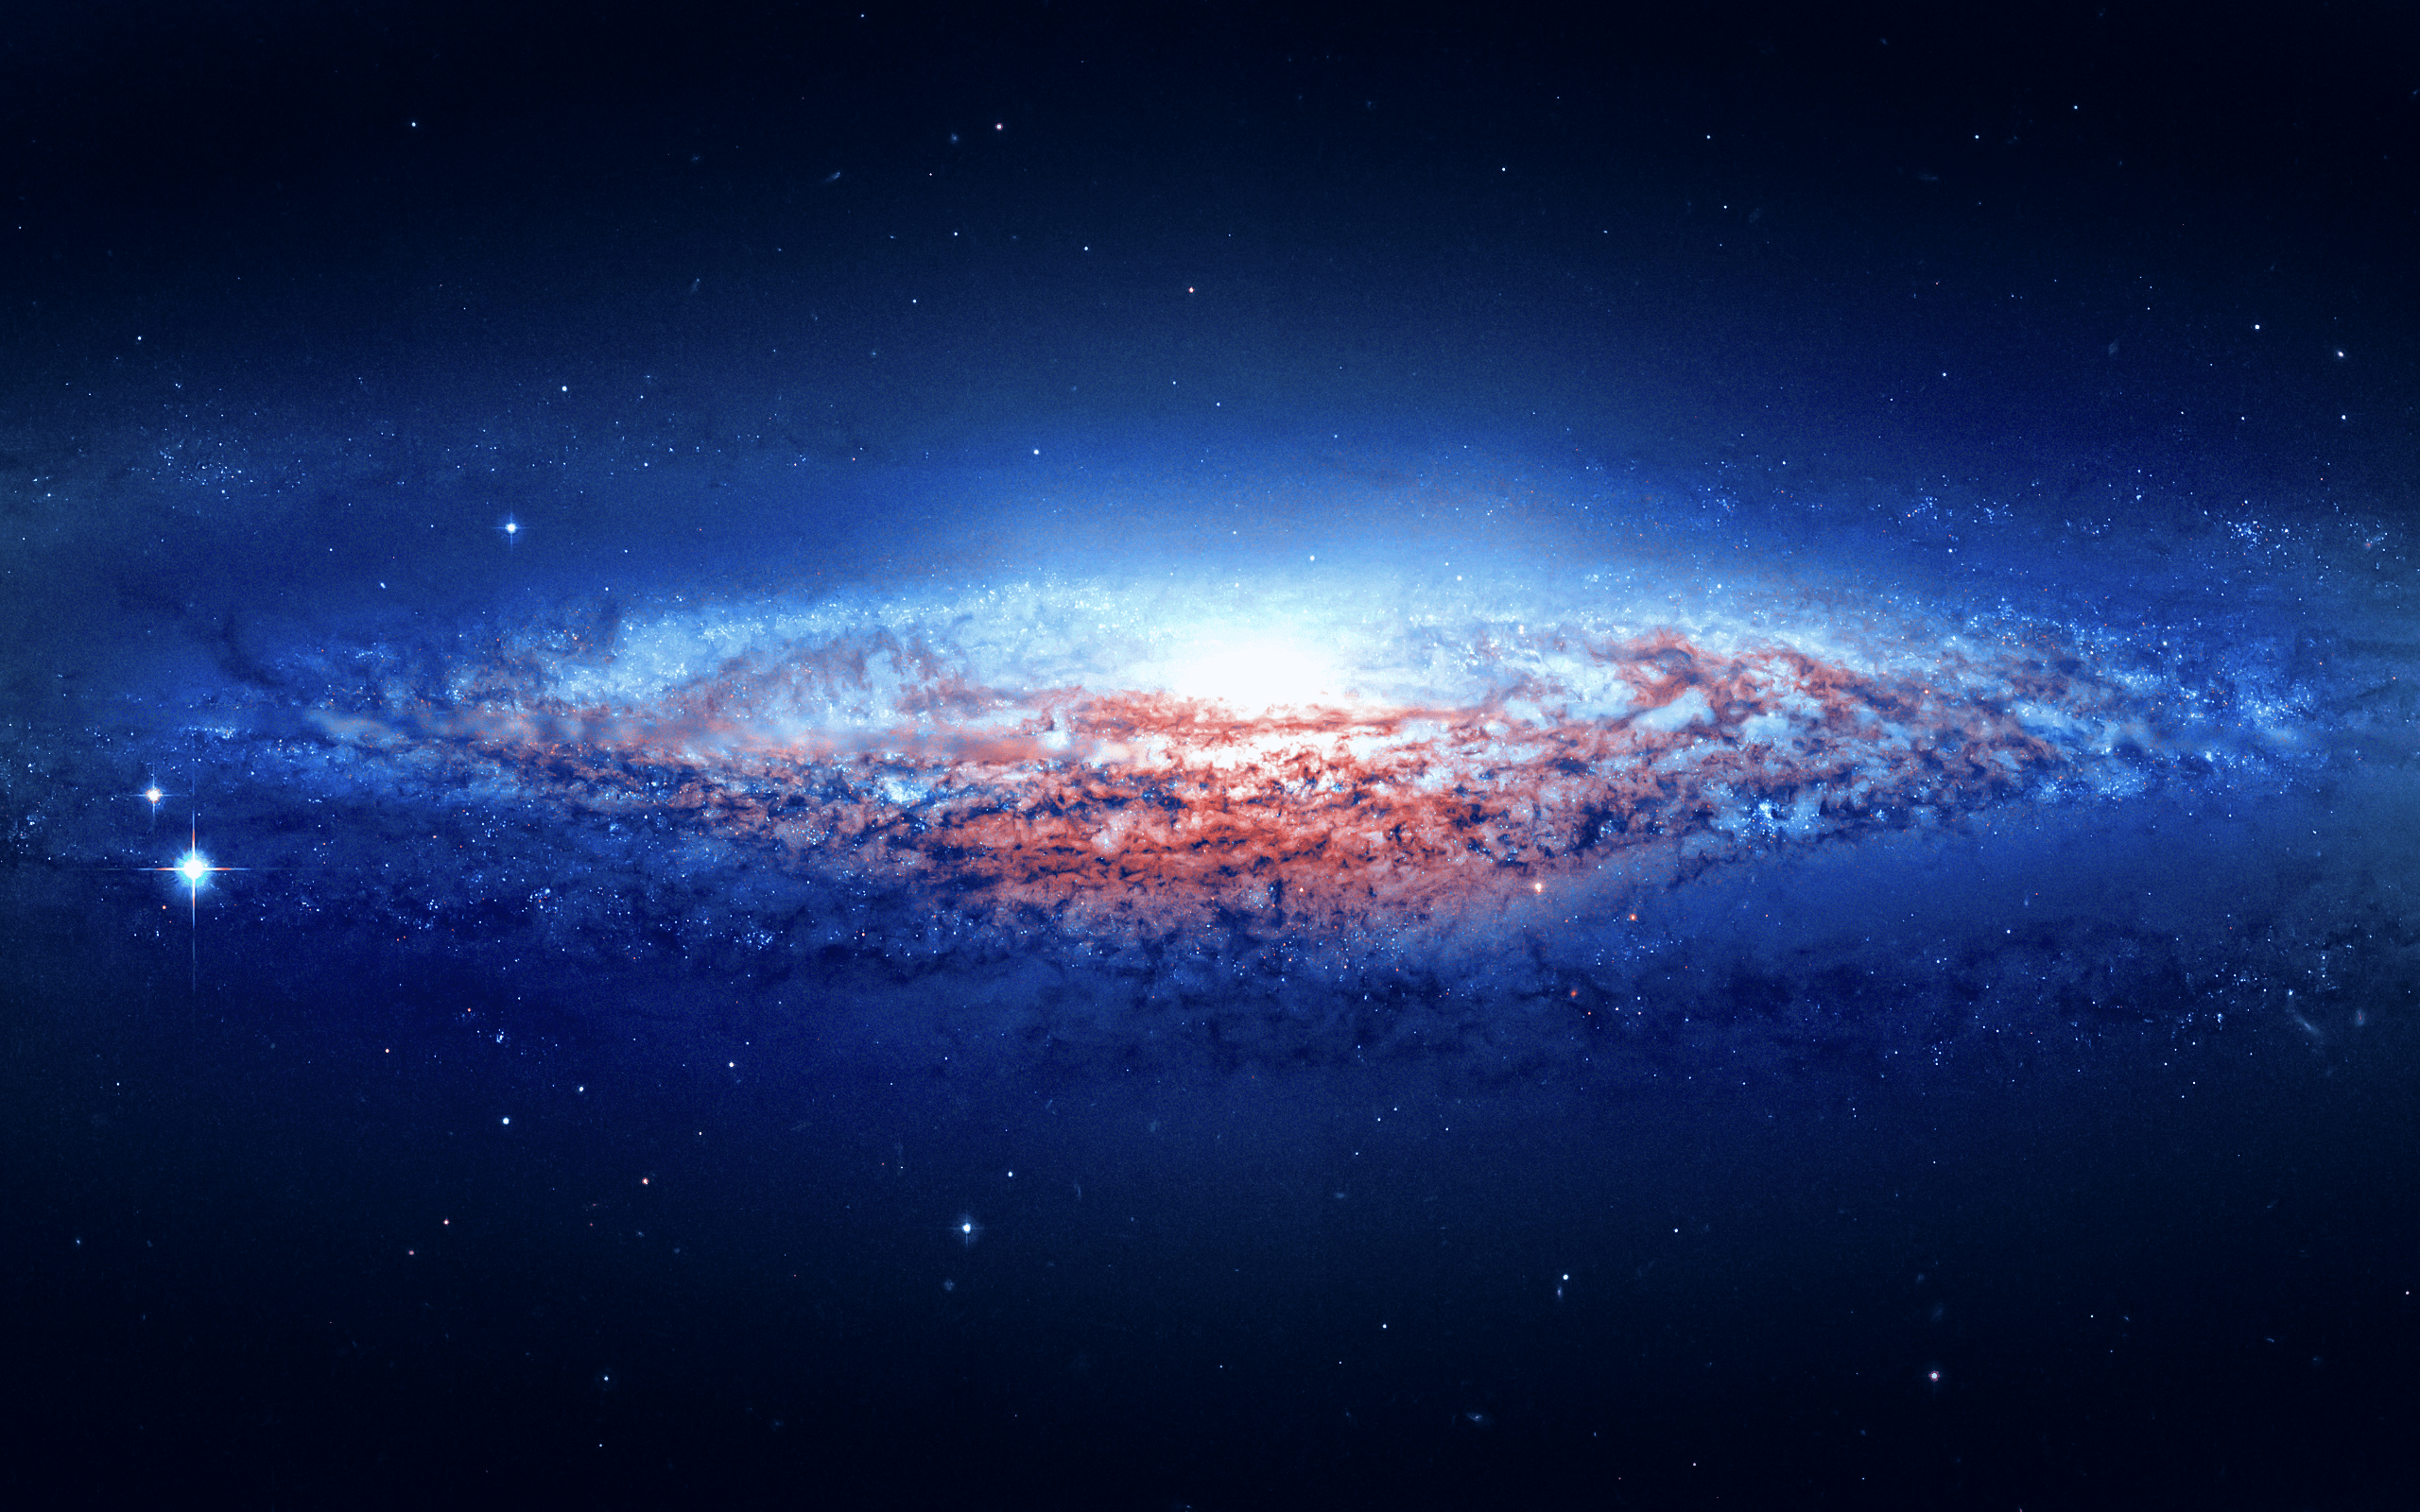 4K Ultra HD Galaxy Wallpapers - Top Những Hình Ảnh Đẹp